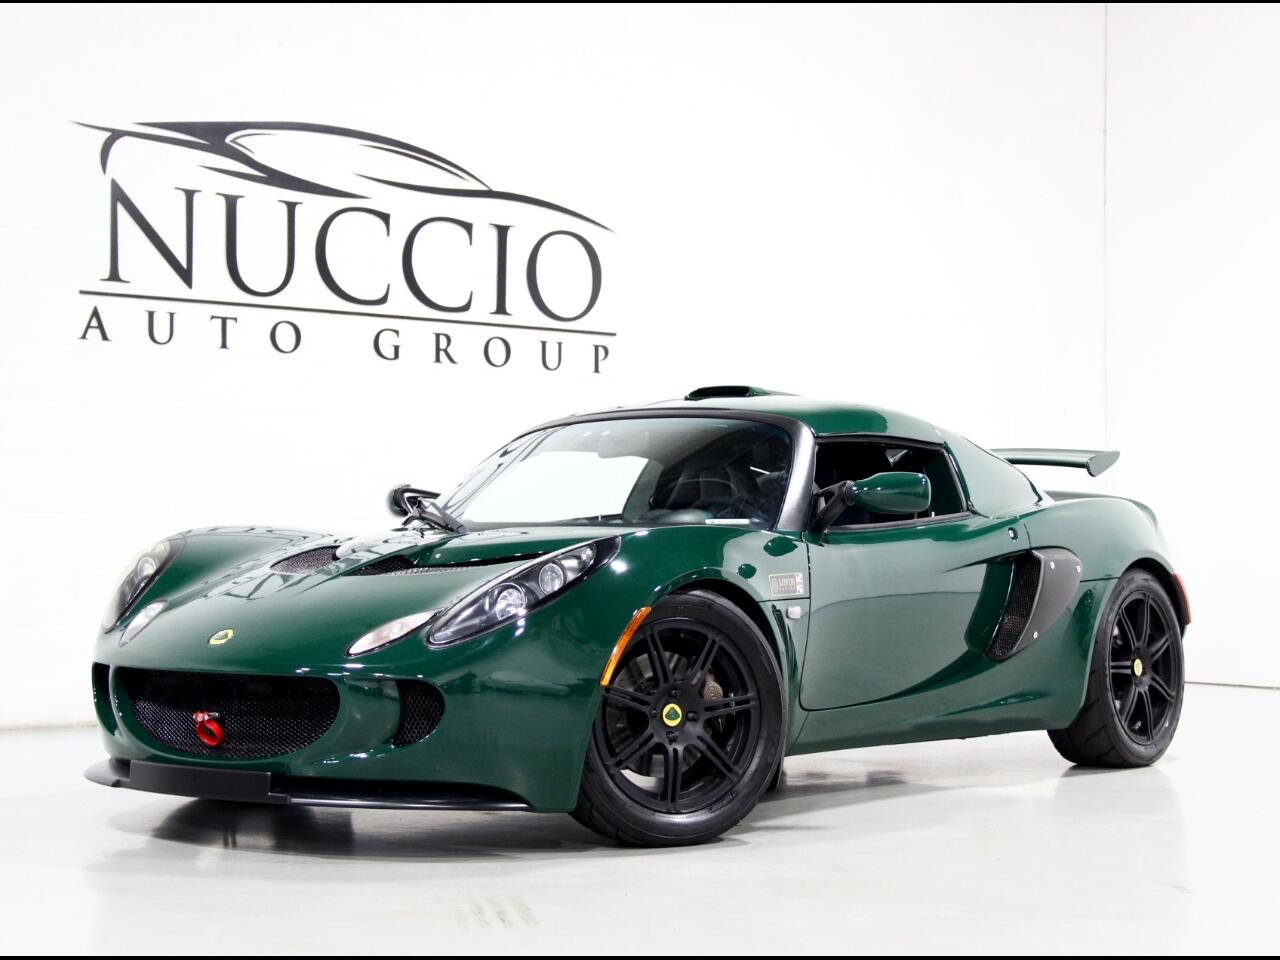 Used 2007 Lotus Exige S for Sale in Addison IL 60101 Nuccio Auto Group